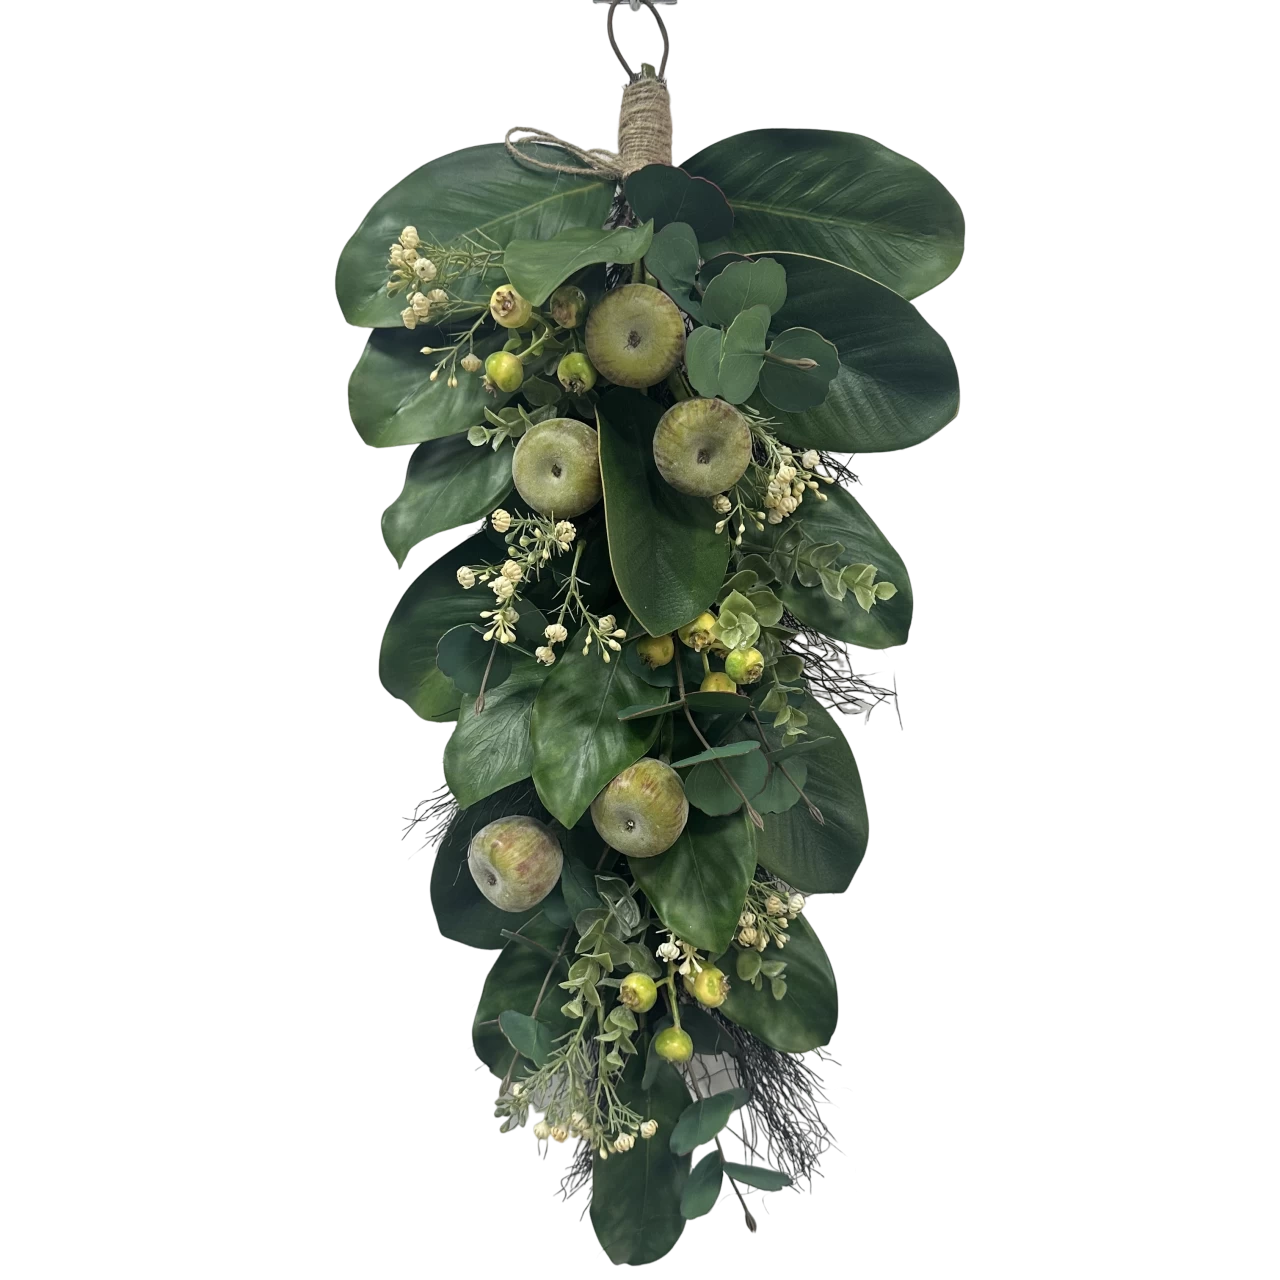 China Senmasine kunstmatige krans gemengde appelvijg groene bladeren lentekransen voordeur hangende decoratie fabrikant